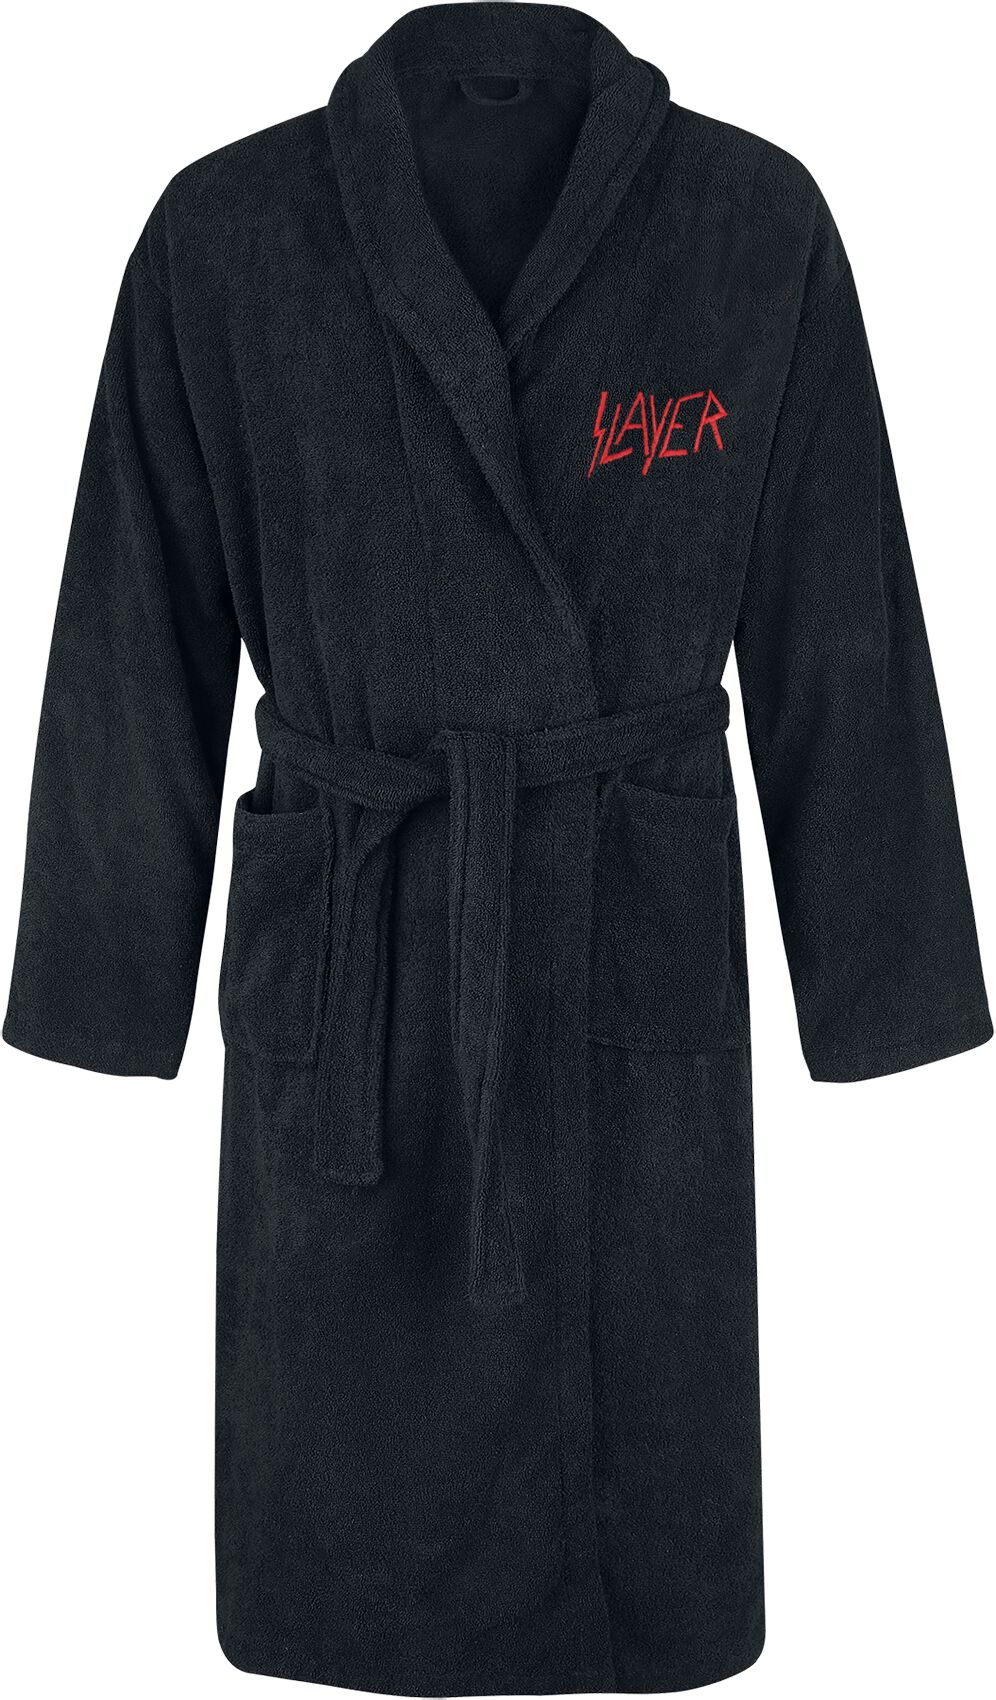 Slayer Bademantel - Logo - S-M bis XXL-3XL - Größe XXL-3XL - schwarz  - EMP exklusives Merchandise!